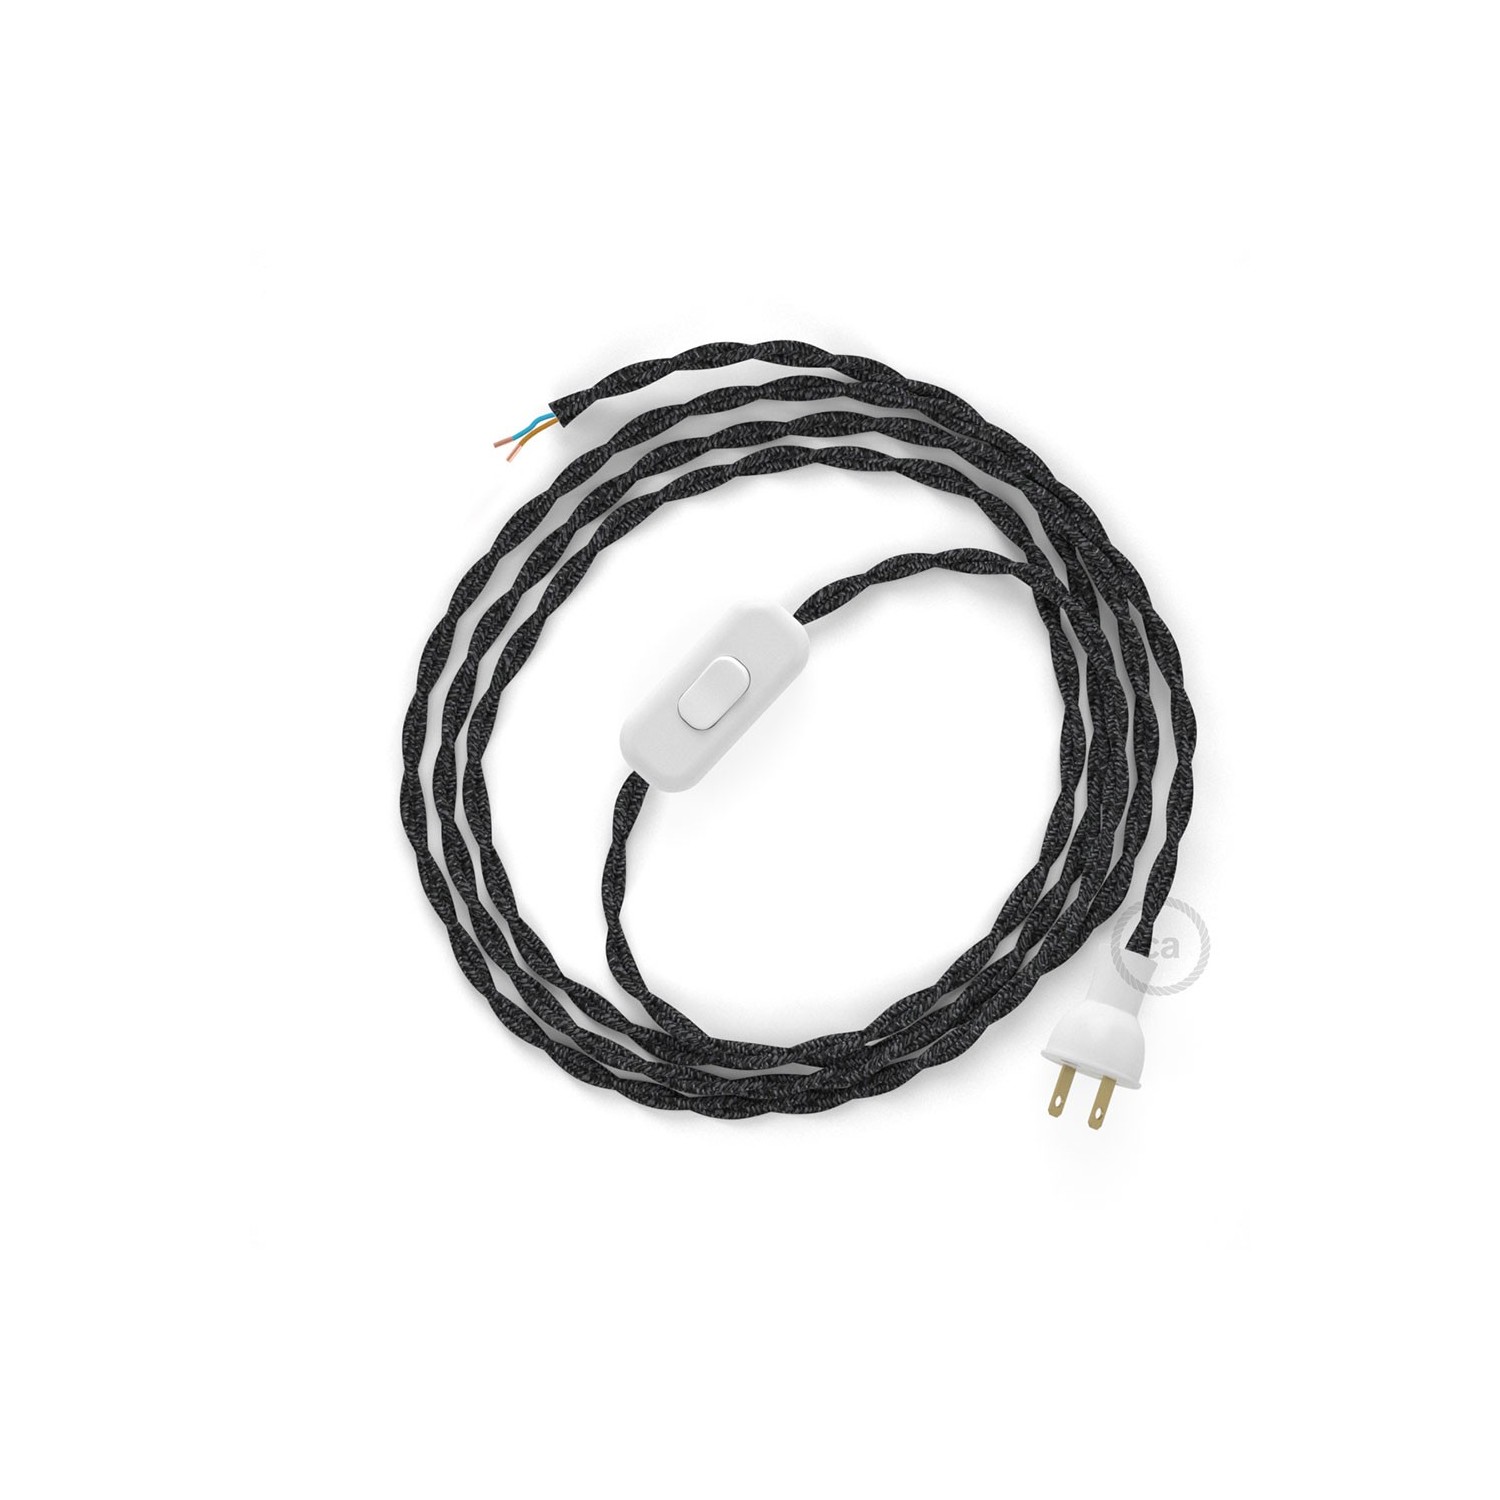 Cableado para lámpara de mesa, cable TN03 Lino Natural Antracita 1,8 m. Elige el color de la clavija y del interruptor!